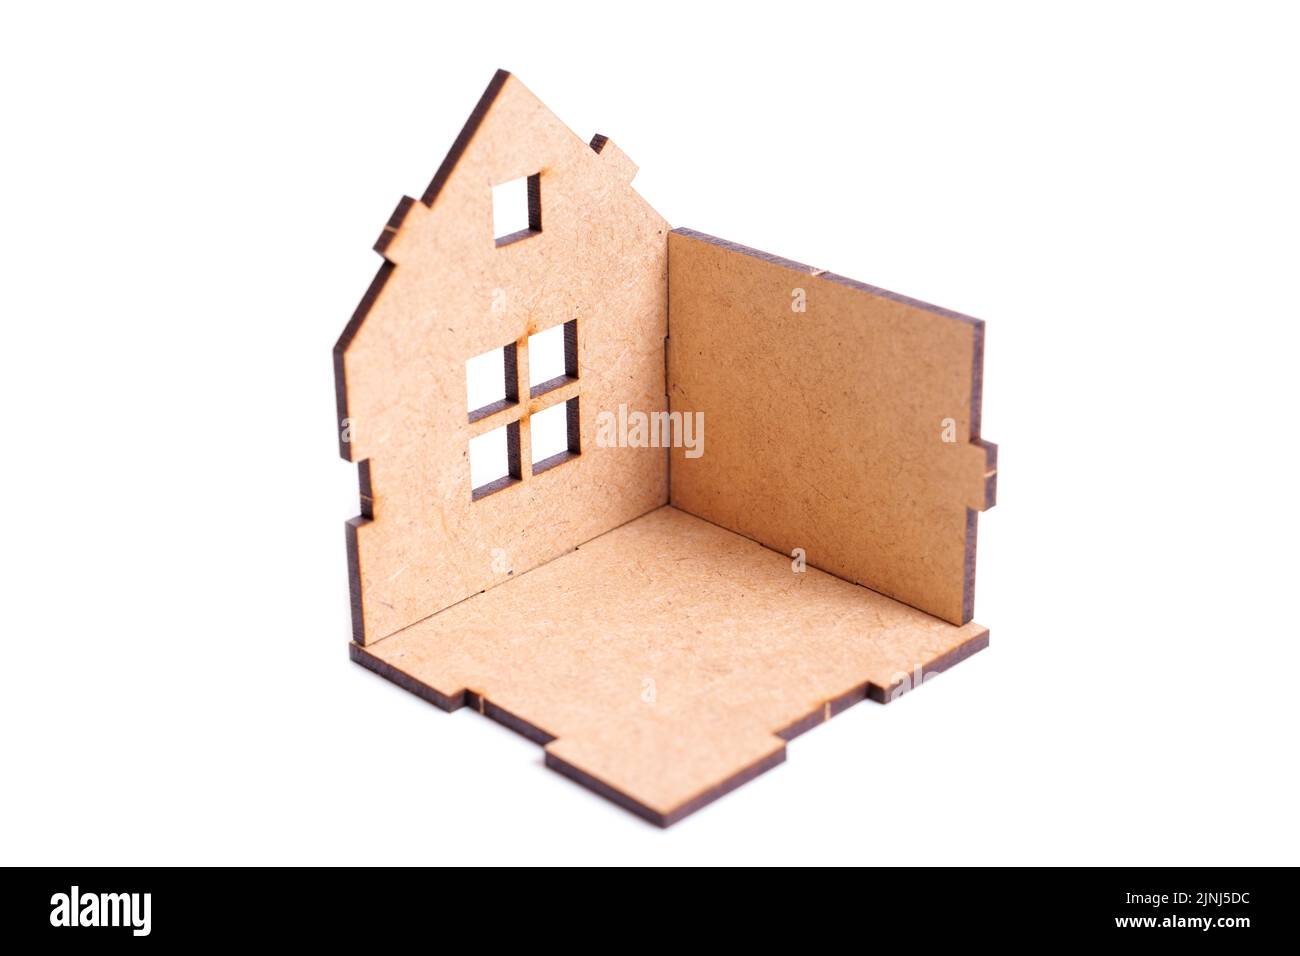 Maison de jouets partiellement assemblée avec toit manquant et murs isolés sur blanc. Concept de construction et de réparation de maisons. Banque D'Images